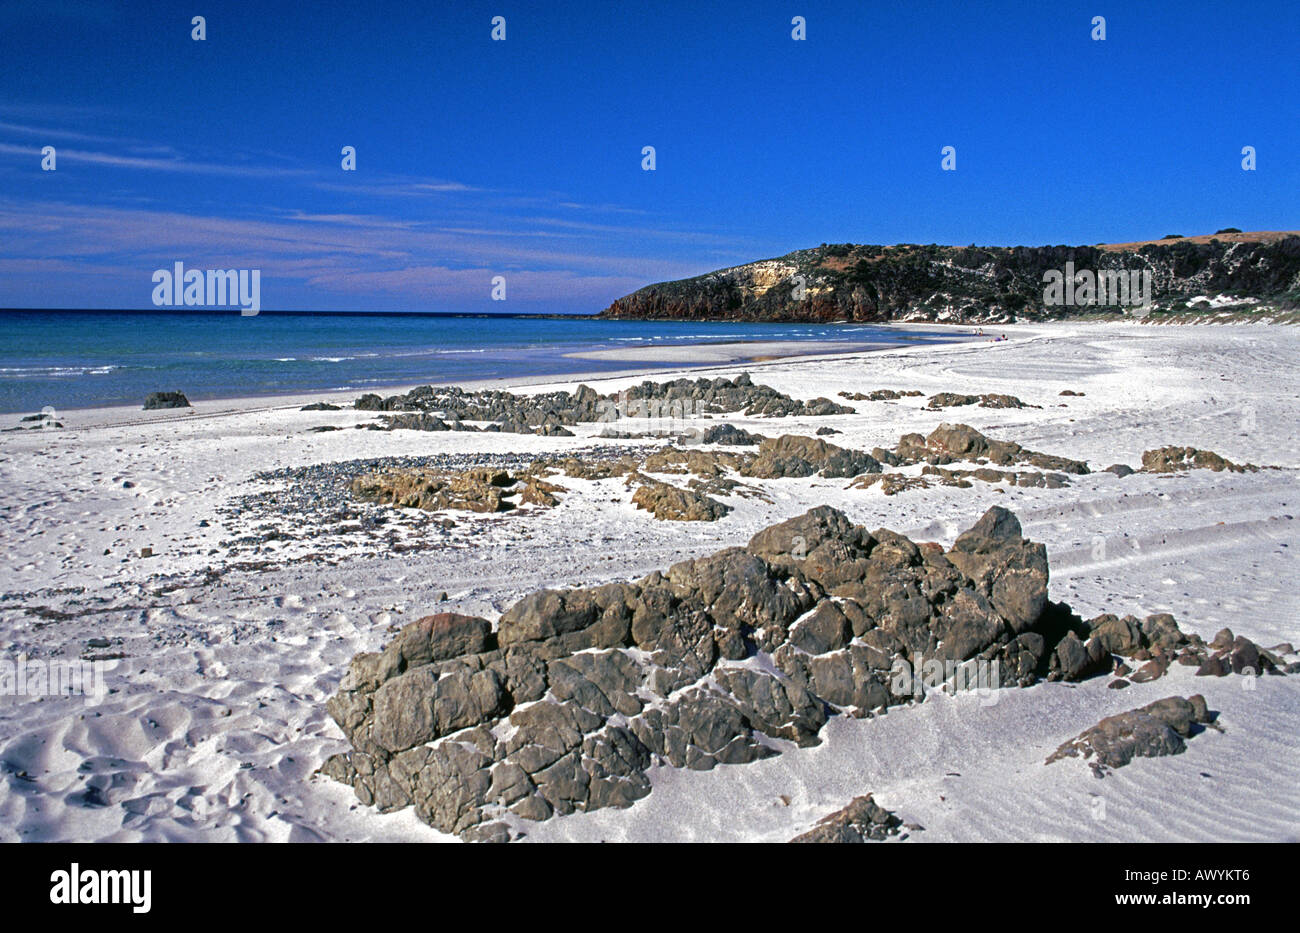 Stokes Bay on Kangaroo Island, South Australia Stock Photo